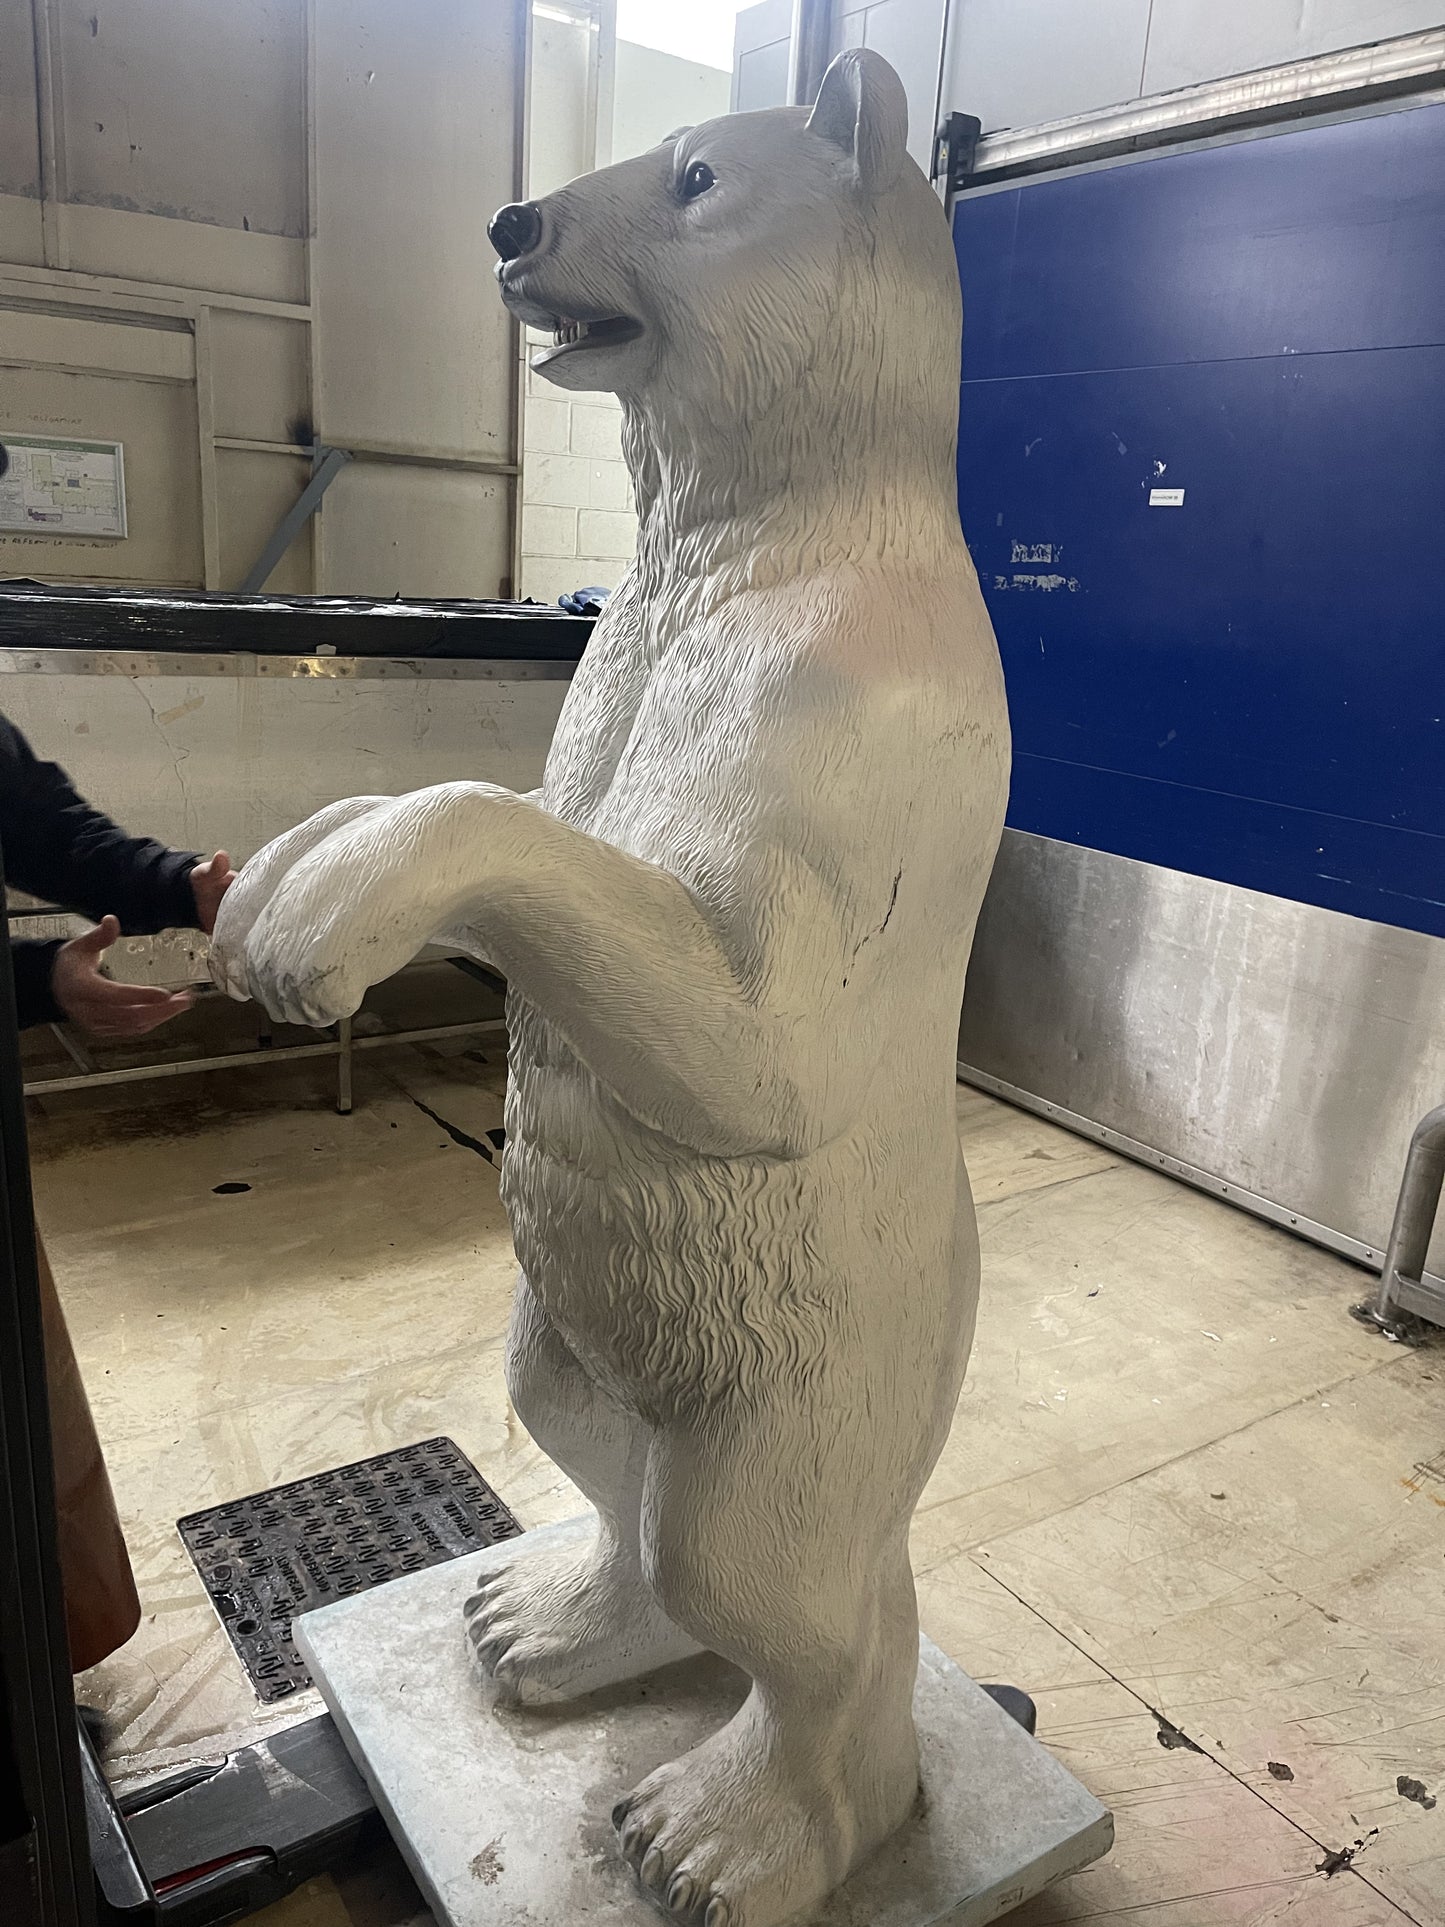 Statues 54/33/23/7 cm moule blanc sculpture ours décor fait à la